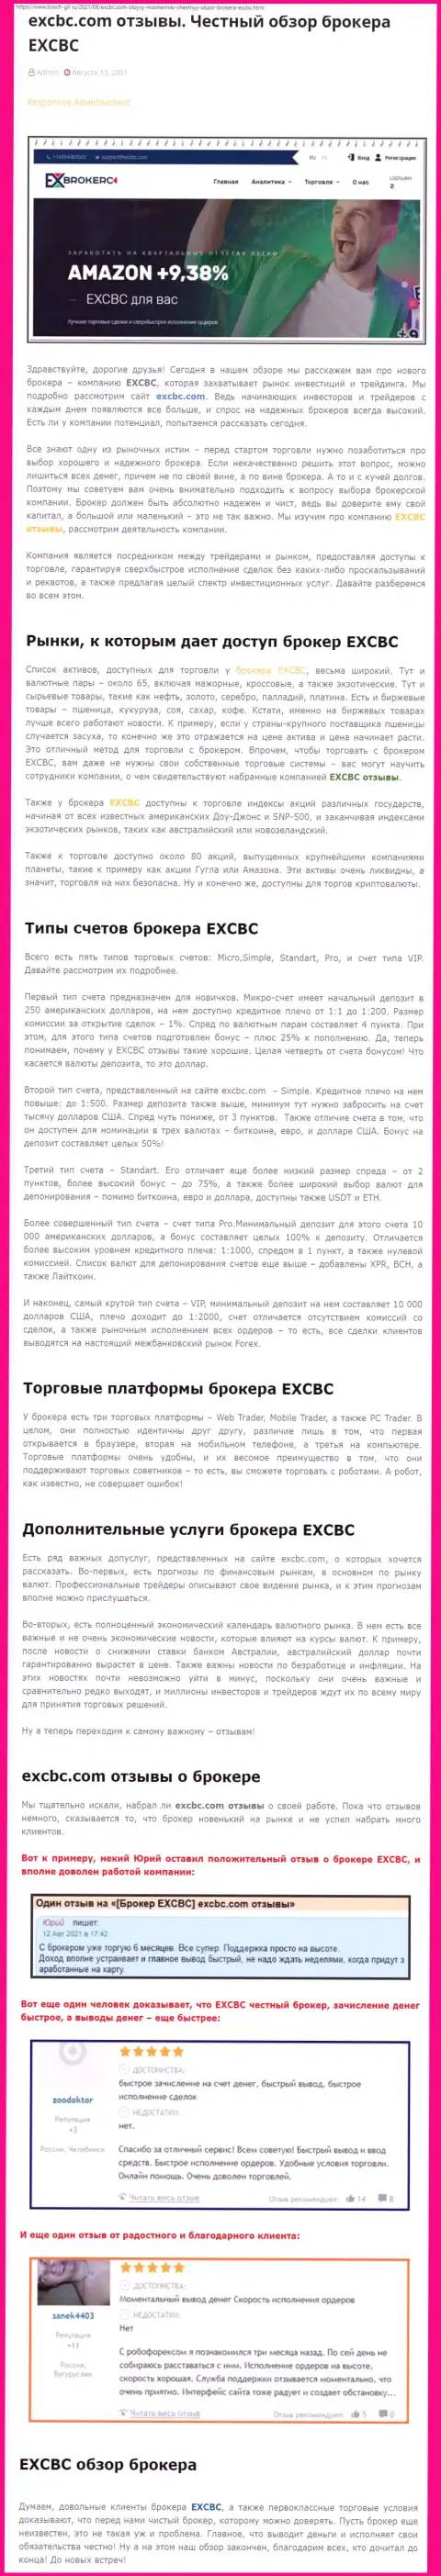 Информация о ФОРЕКС-дилинговой организации EXCBC на сайте бош-глл ру